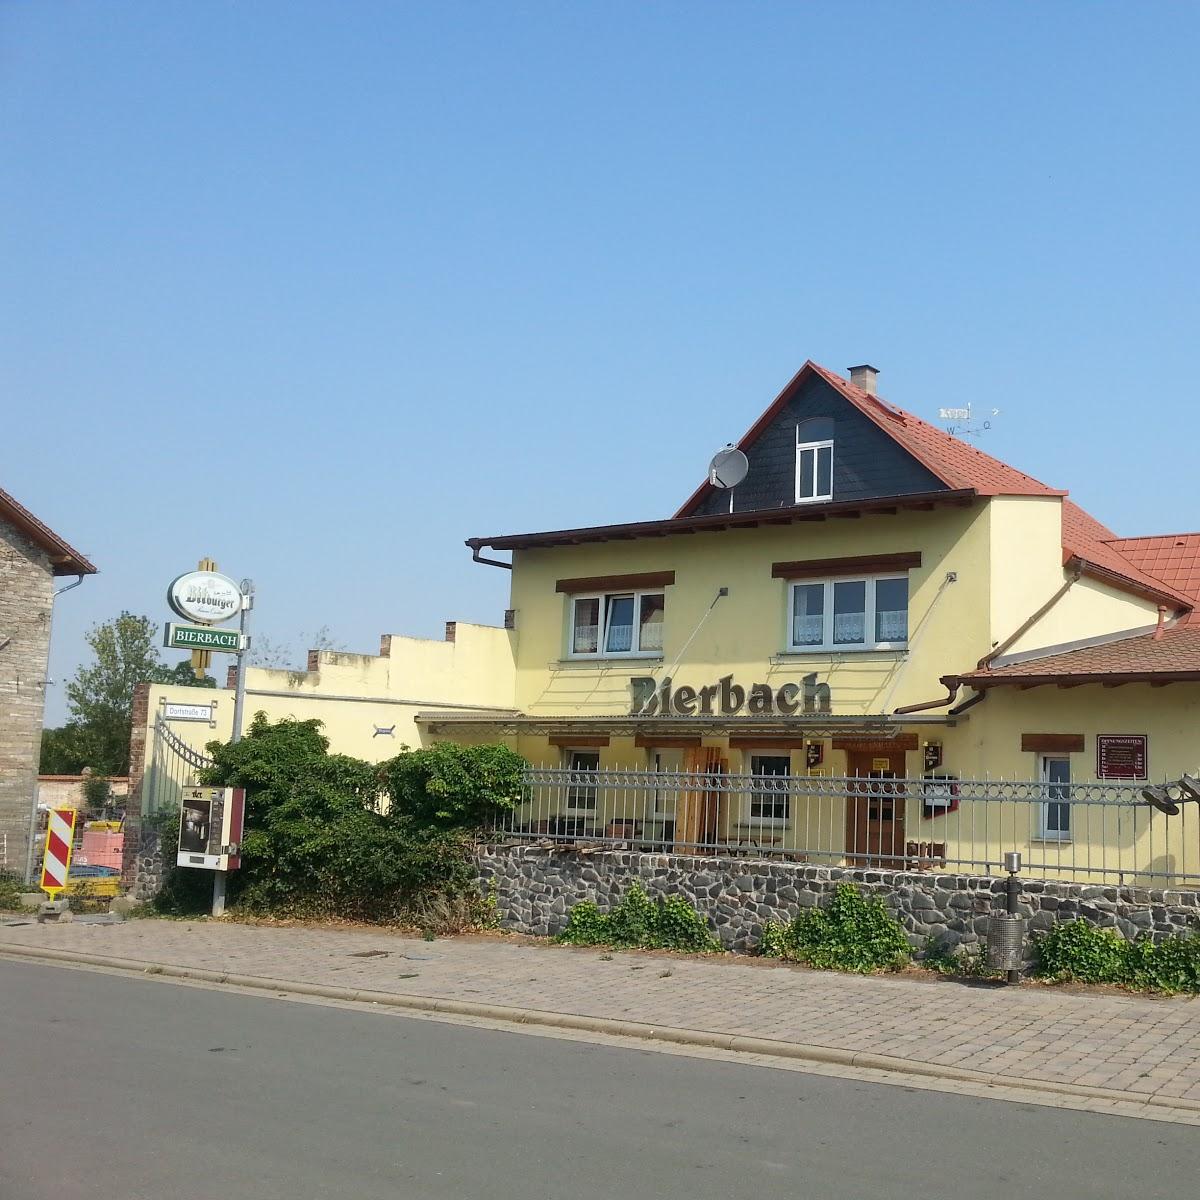 Restaurant "Gasthof Schallenburg" in Sömmerda